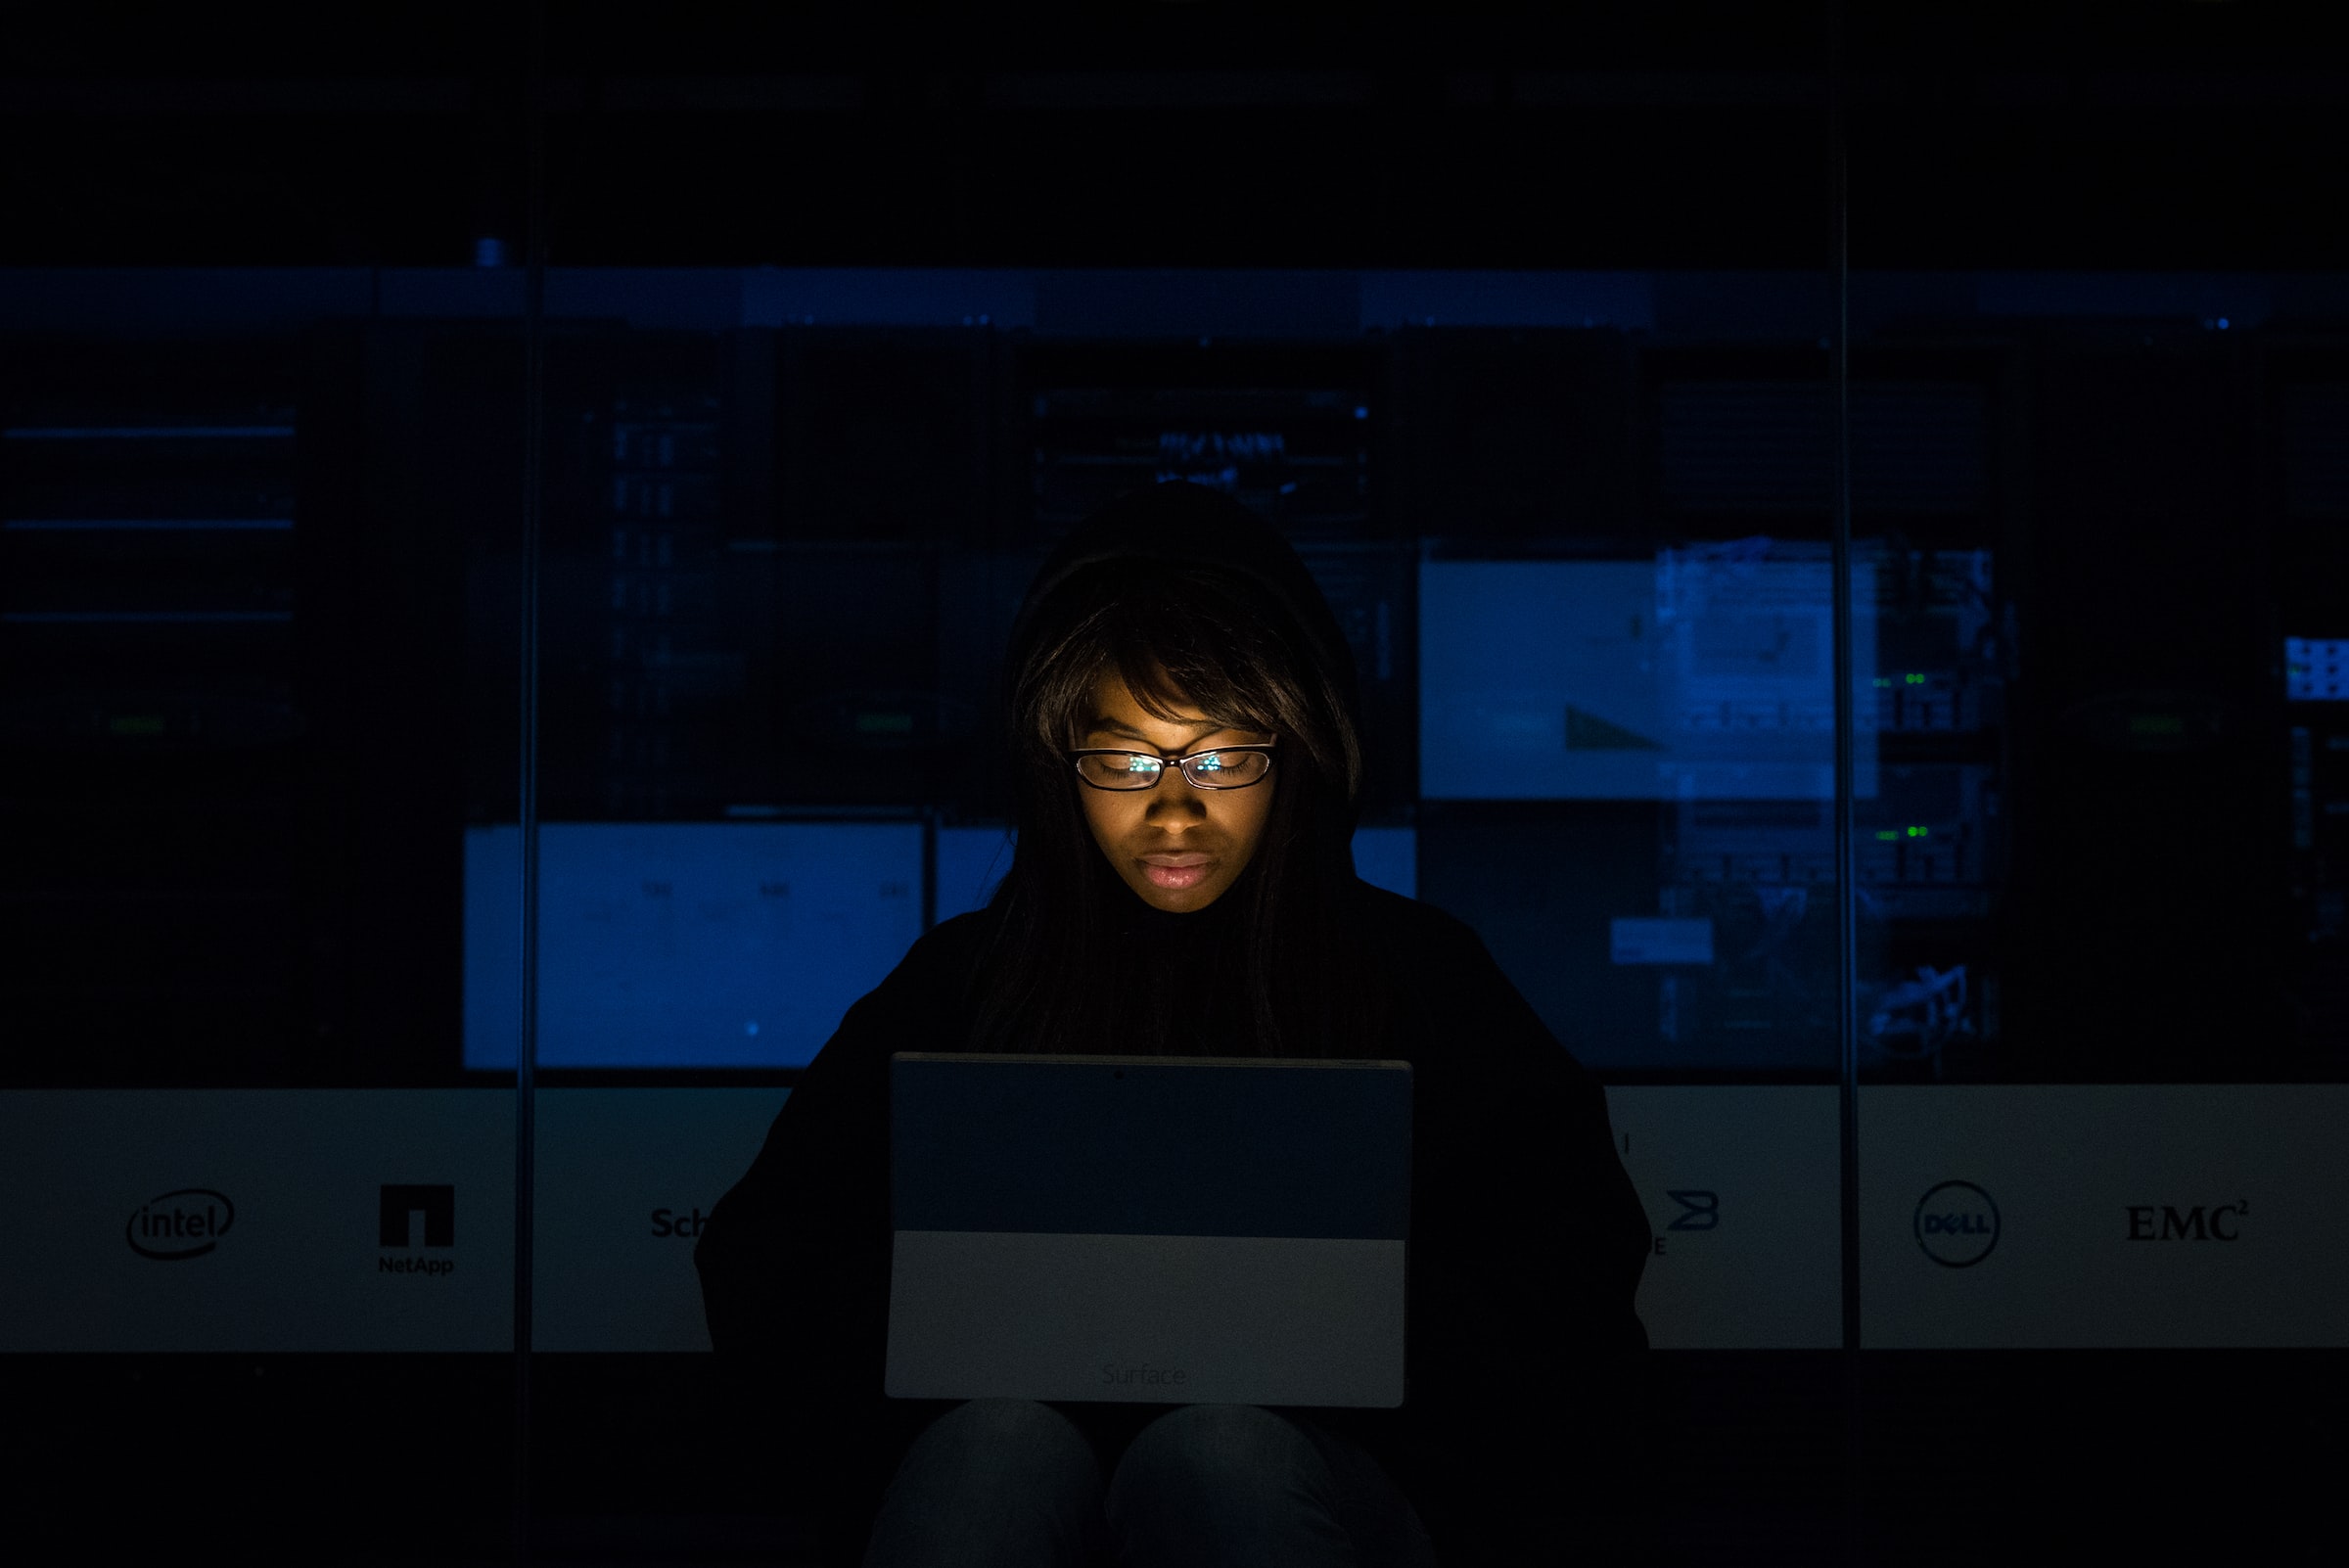 Vemos uma mulher negra concentrada enquanto trabalha em seu computador numa sala escura (imagem ilustrativa).